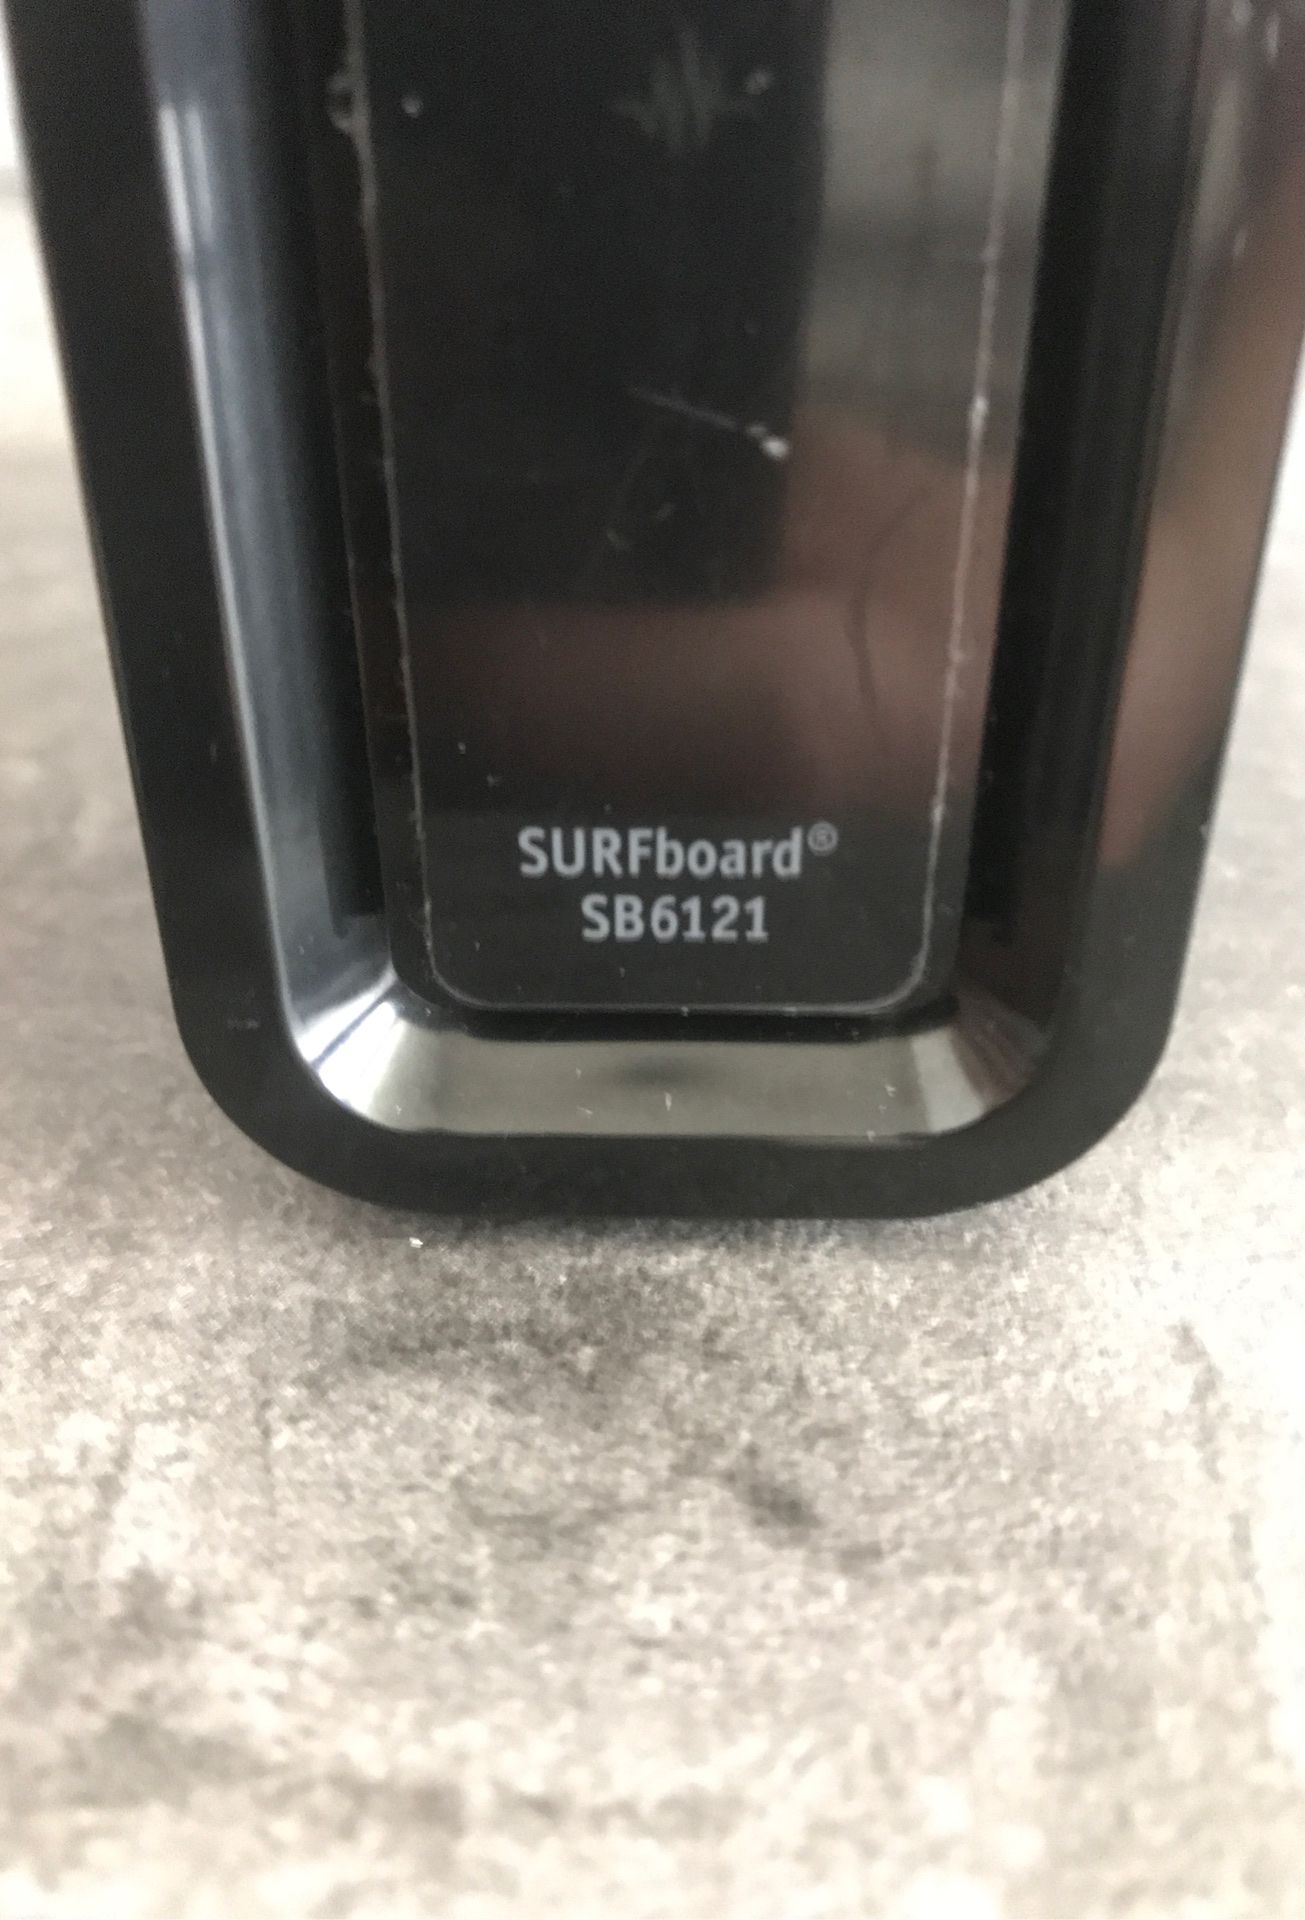 Motorola Surfboard SB6121. Up to 125mb/sec